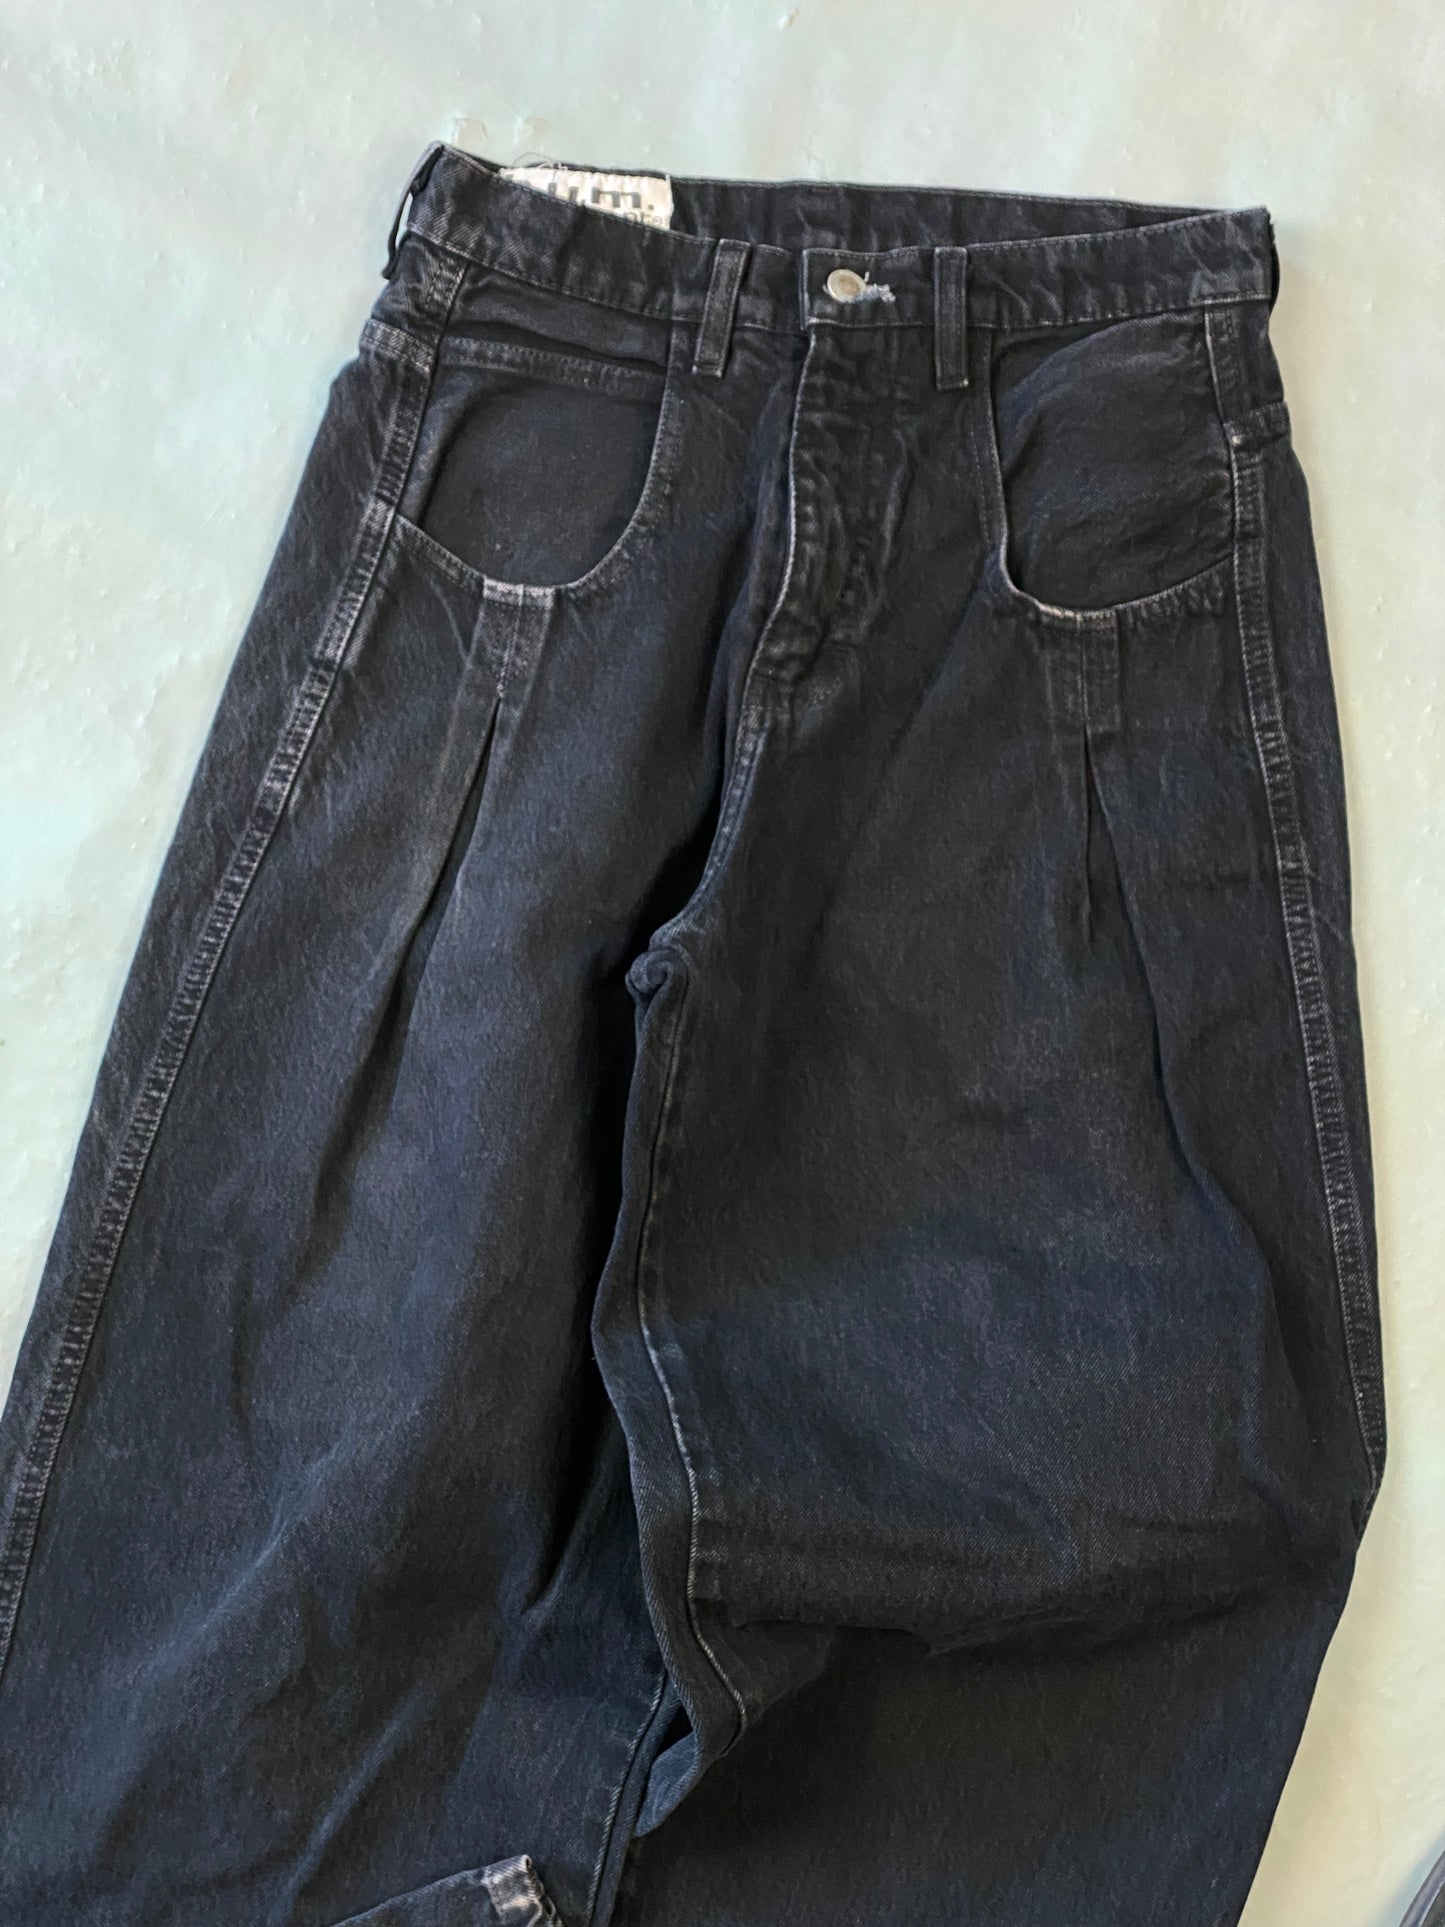 BUM Equiment Deim Vintage Jeans - 30